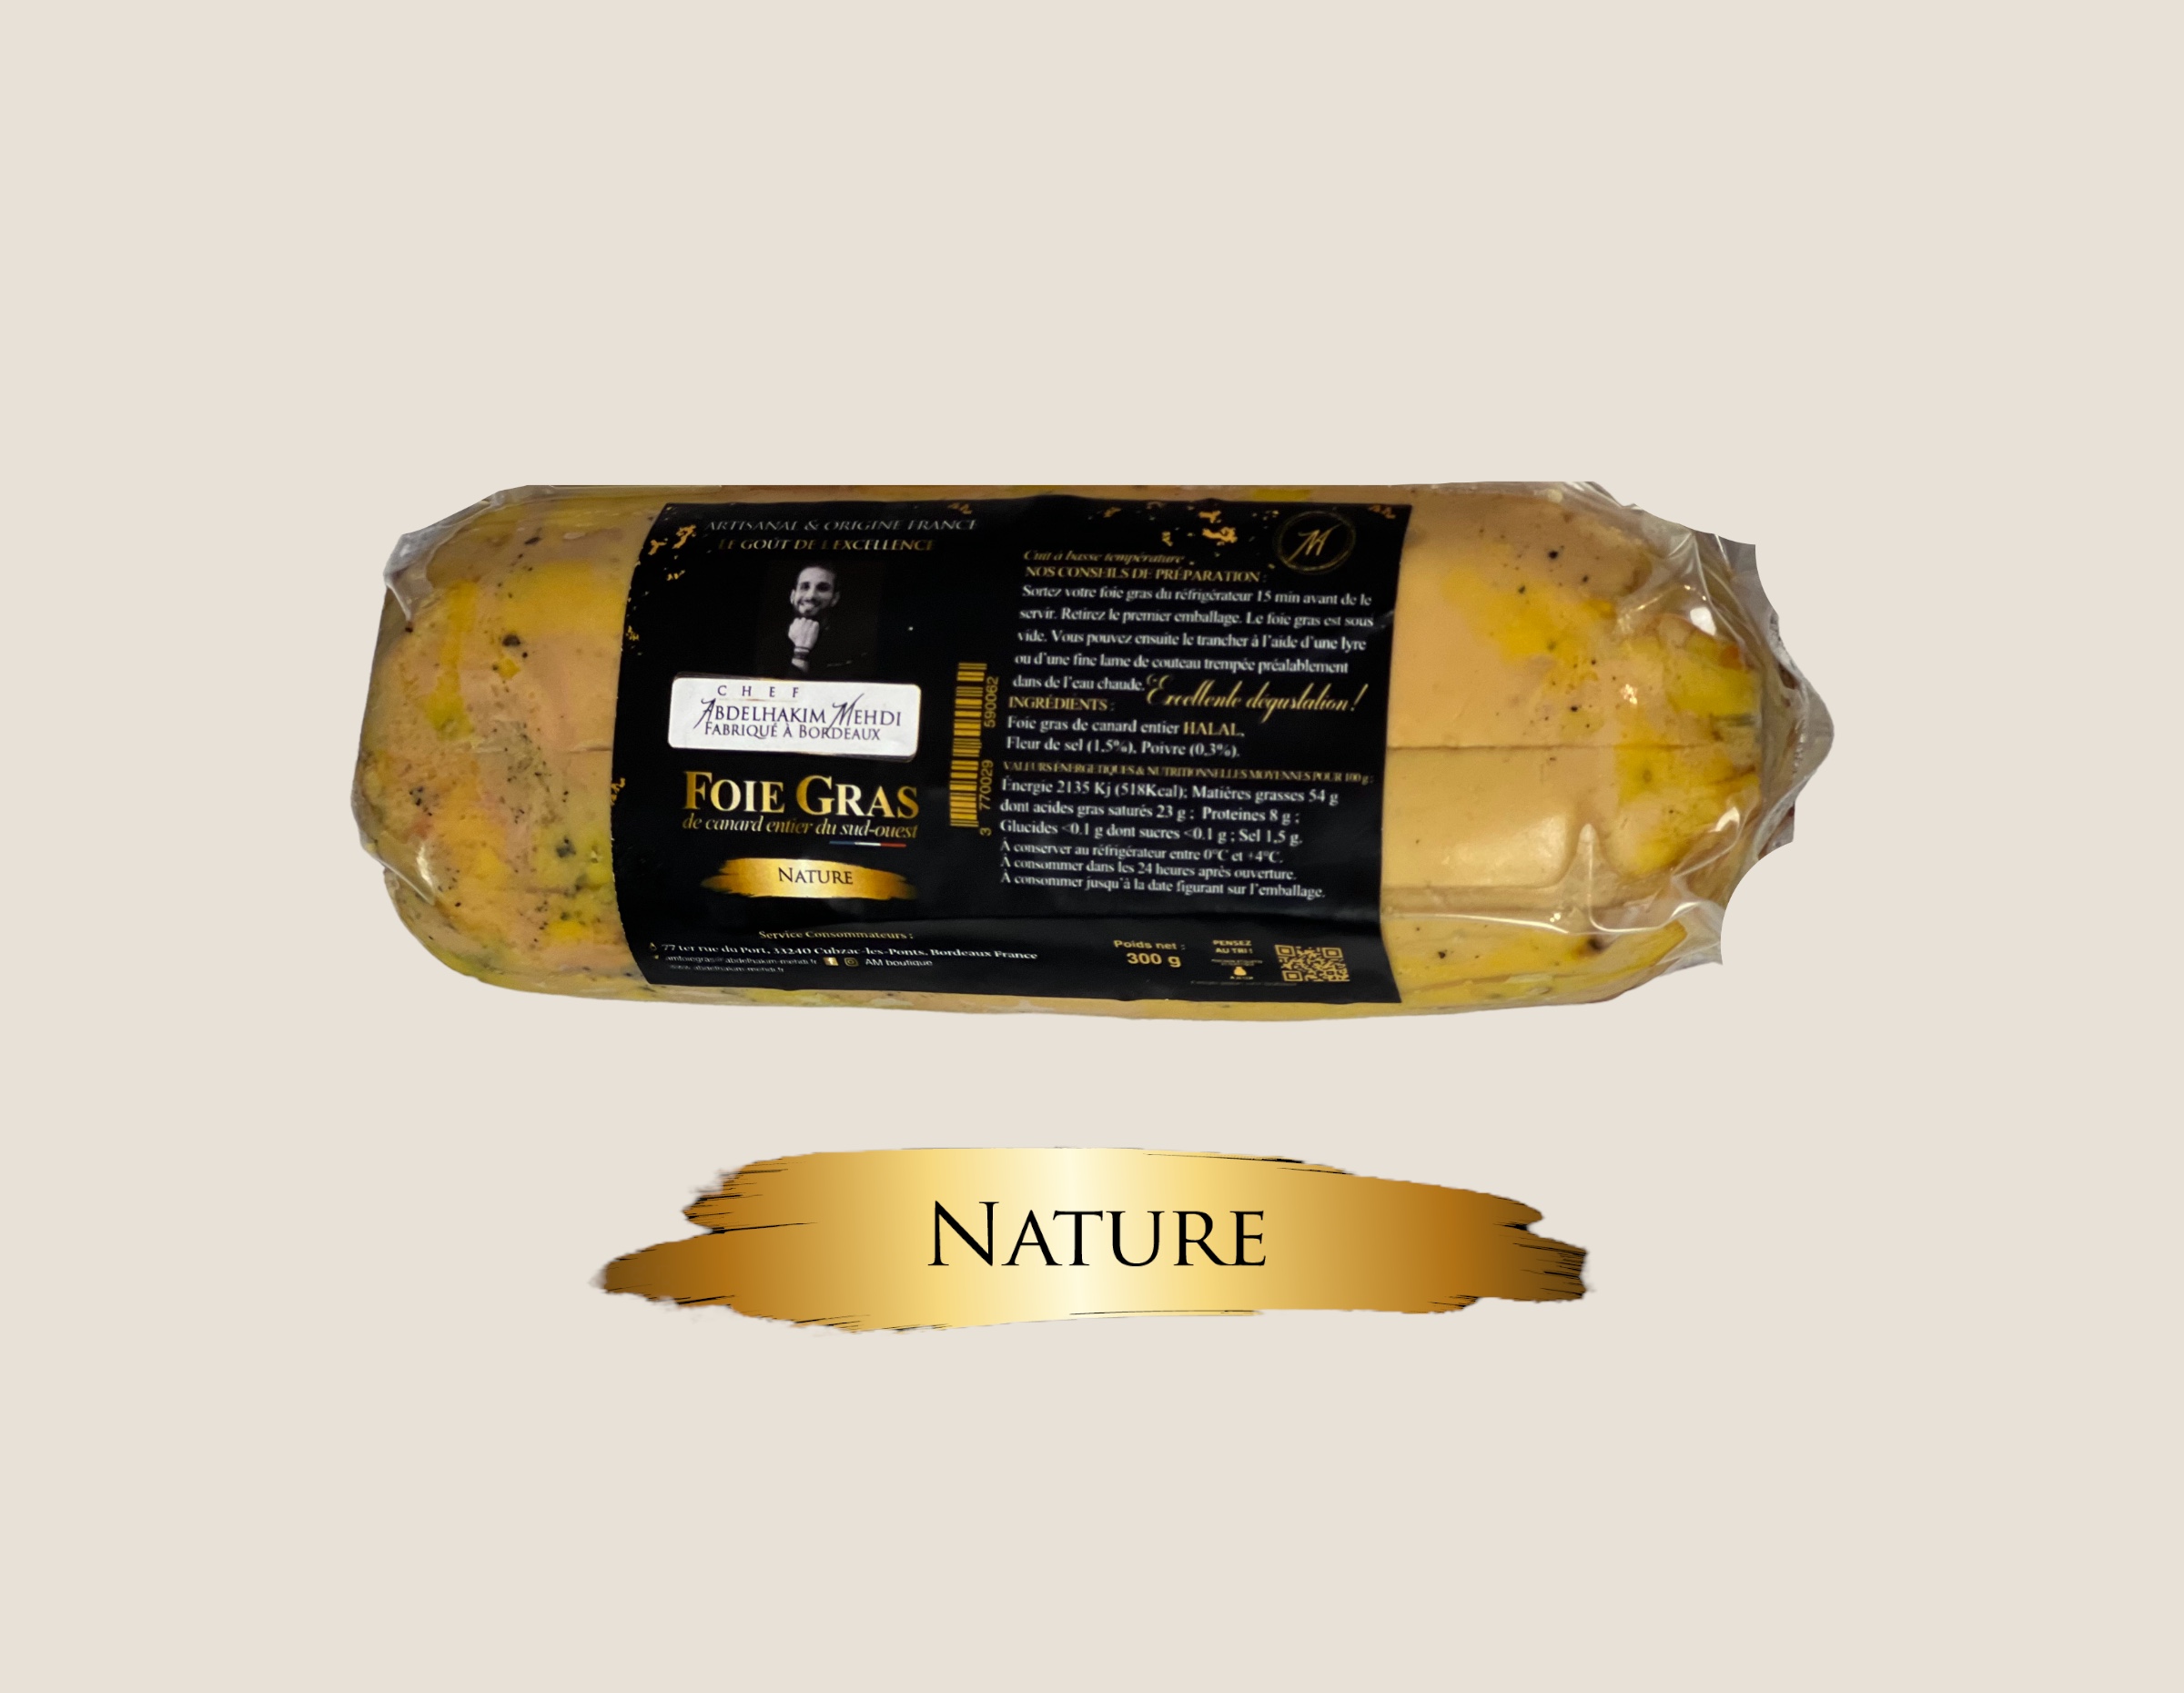 Foie gras de canard entier mi-cuit nature (300g) - Chef Abdelhakim